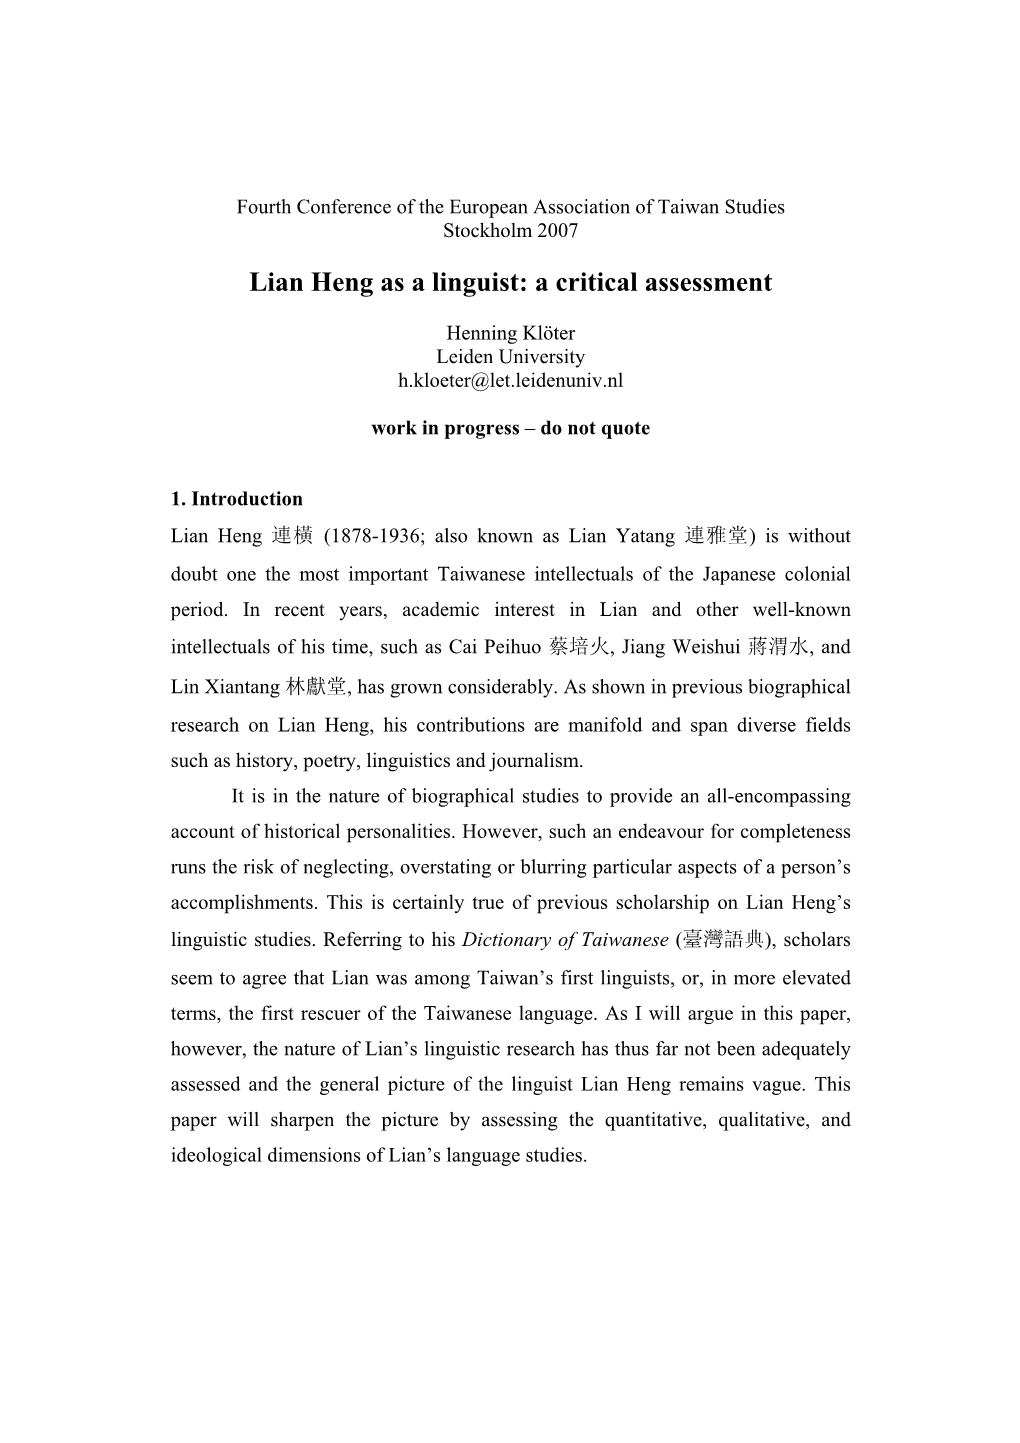 Lian Heng As a Linguist: a Critical Assessment